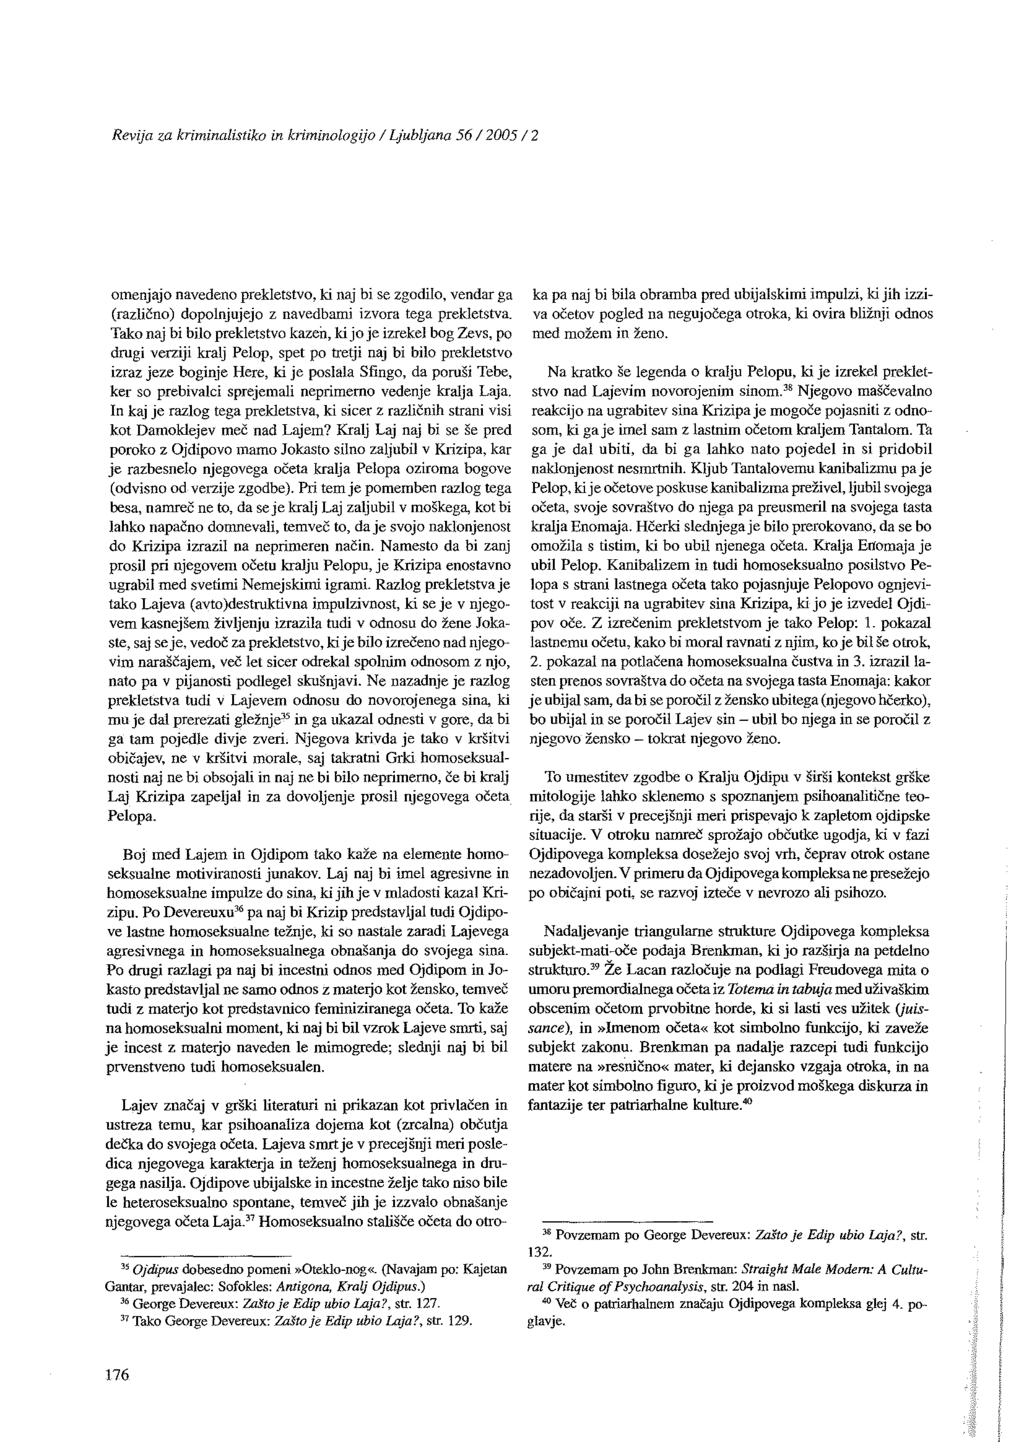 Revija za kriminalistiko in kriminologijo / Ljubljana 56/2005/2 omenjajo navedeno prekletstvo, ki naj bi se zgodilo, vendar ga (različno) dopolnjujejo z navedbami izvora tega prekletstva.